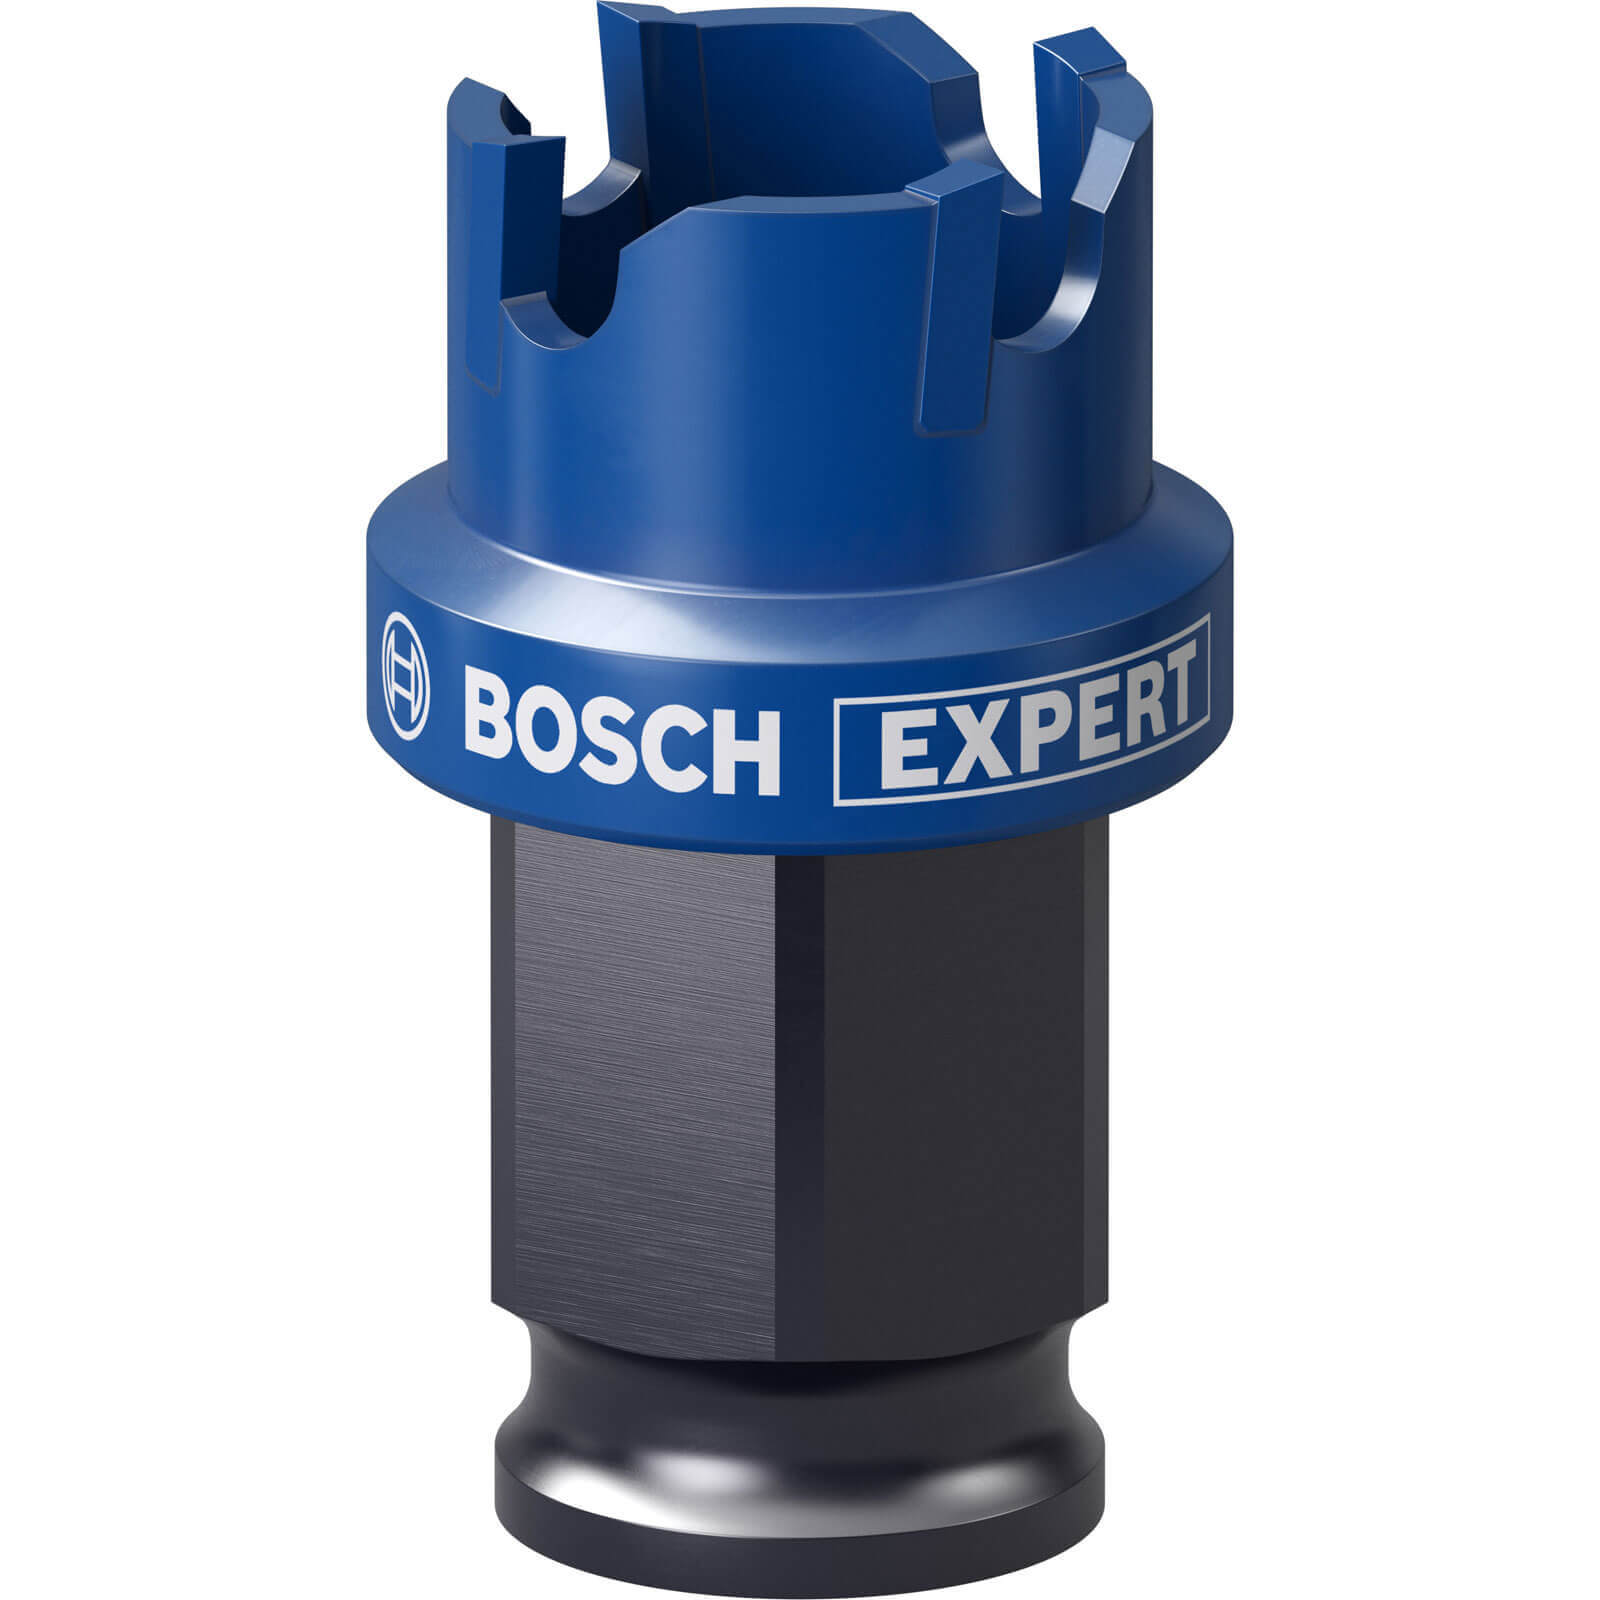 Bosch Expert Carbide Sheet Metal Hole Saw 22mm